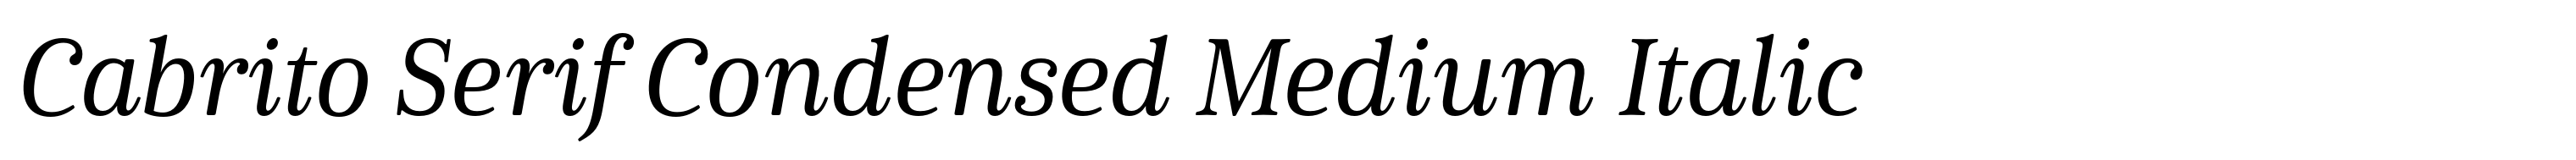 Cabrito Serif Condensed Medium Italic